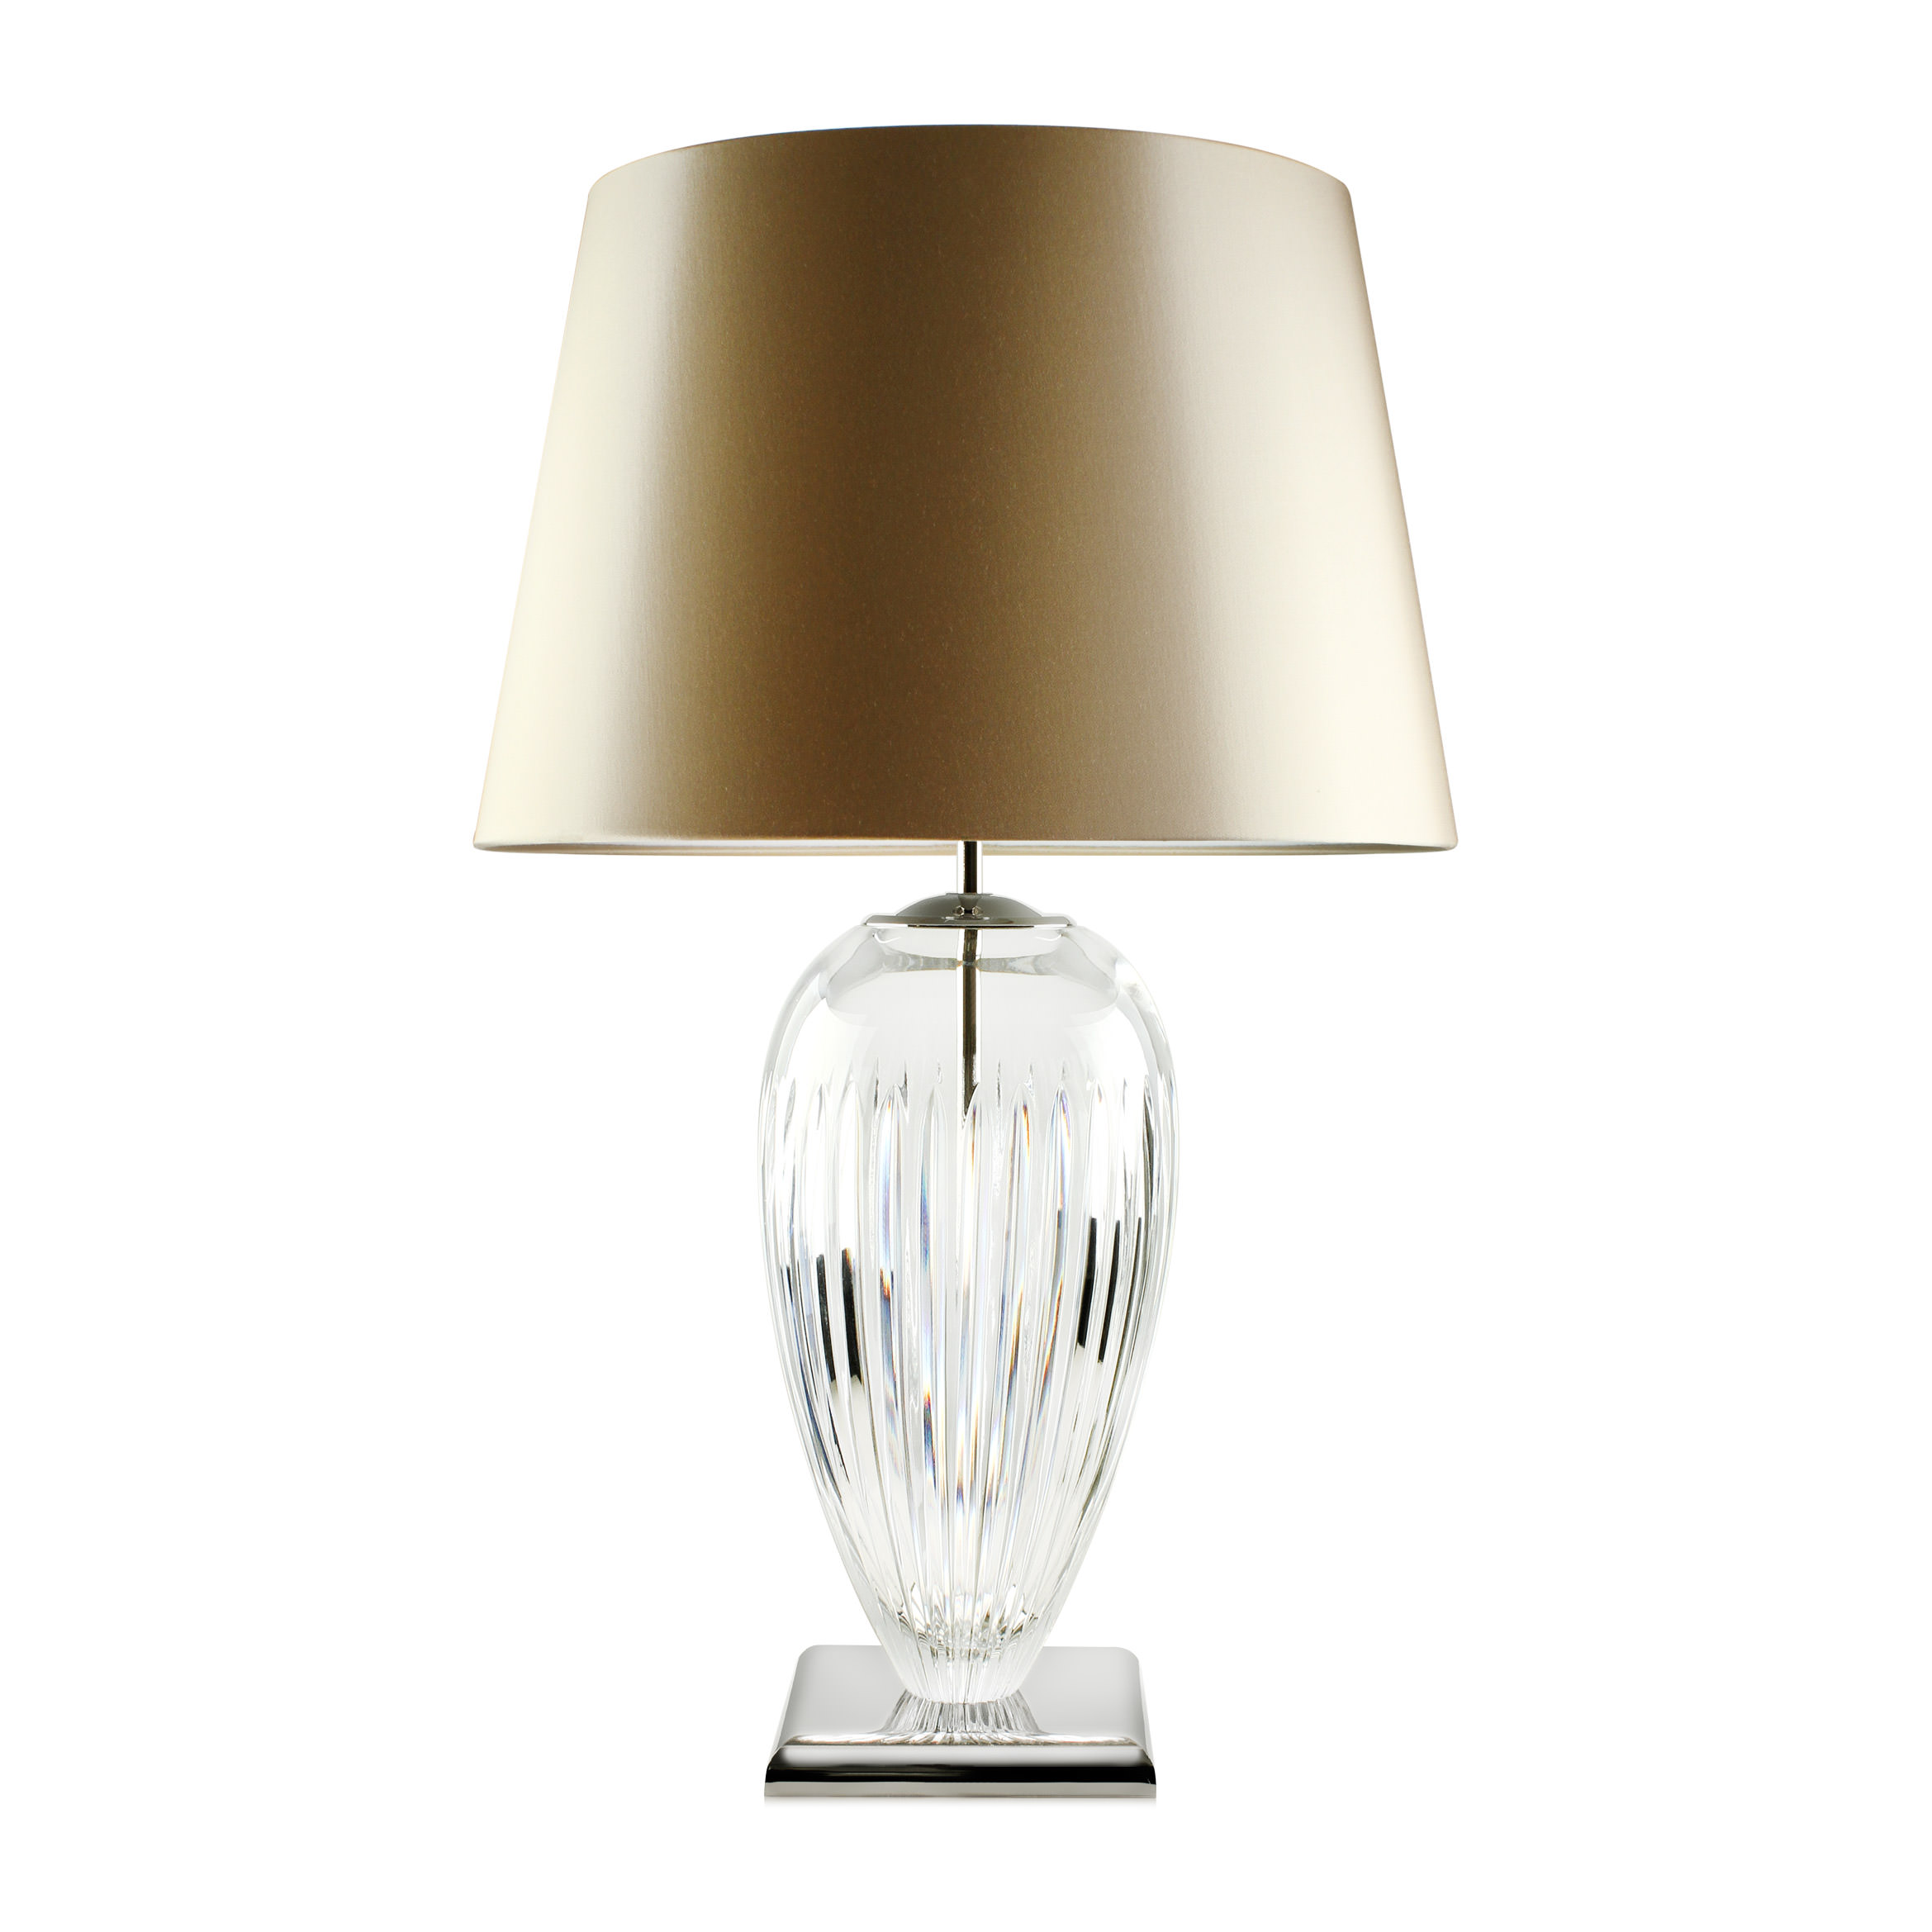 Купить Настольная лампа Palladia в интернет-магазине roooms.ru